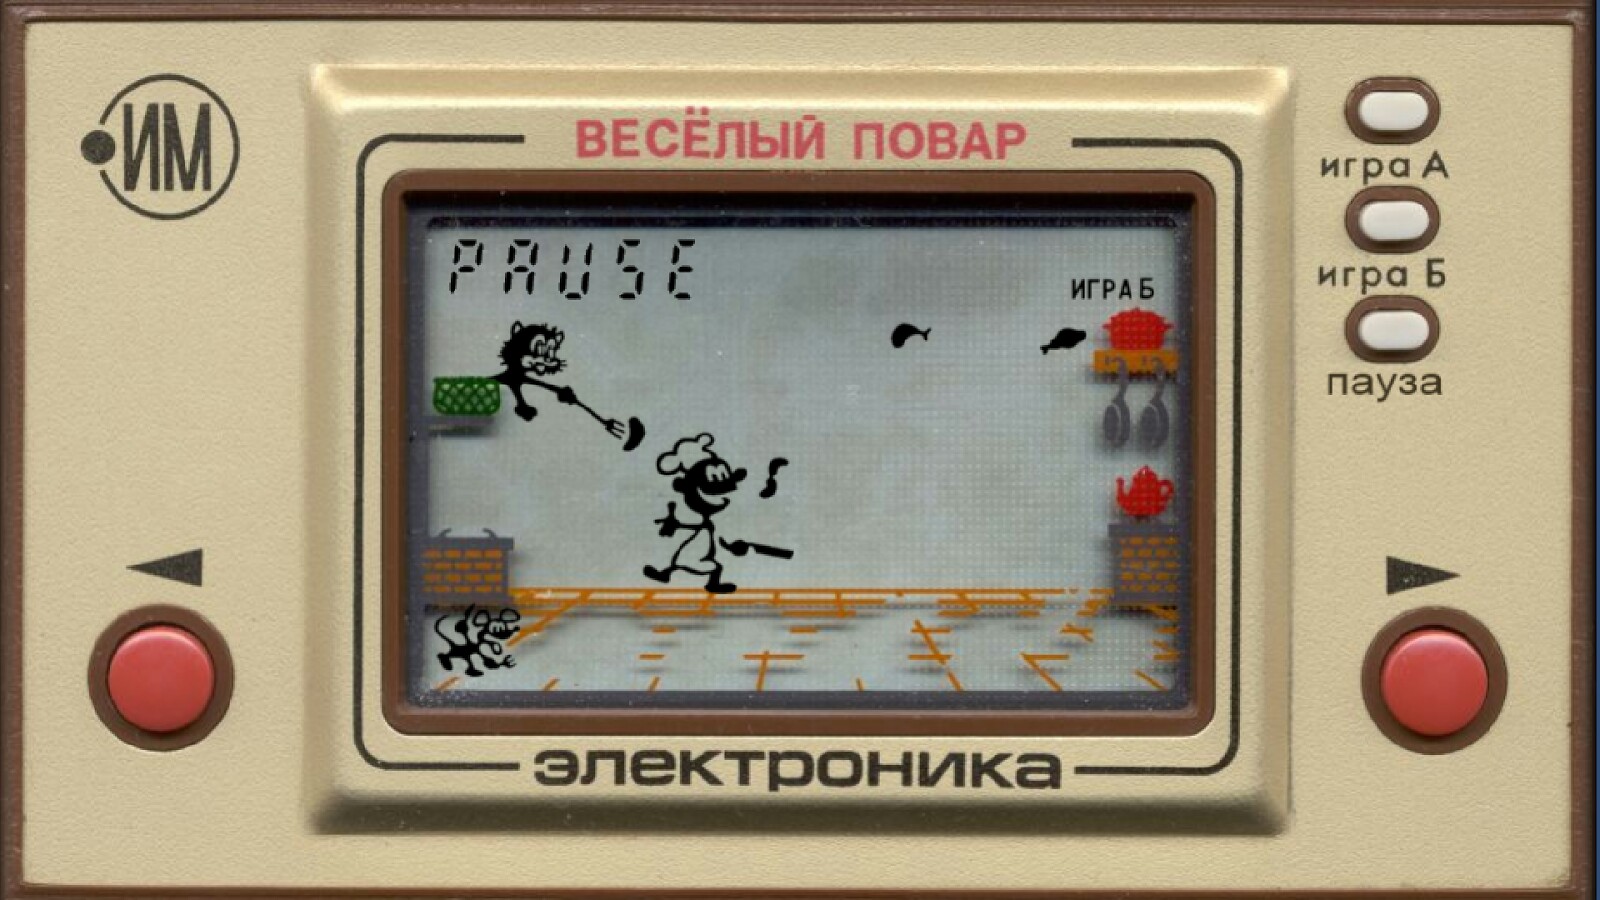 Микропроцессорная игра «Веселый повар!» («Электроника ИМ-04»), СССР